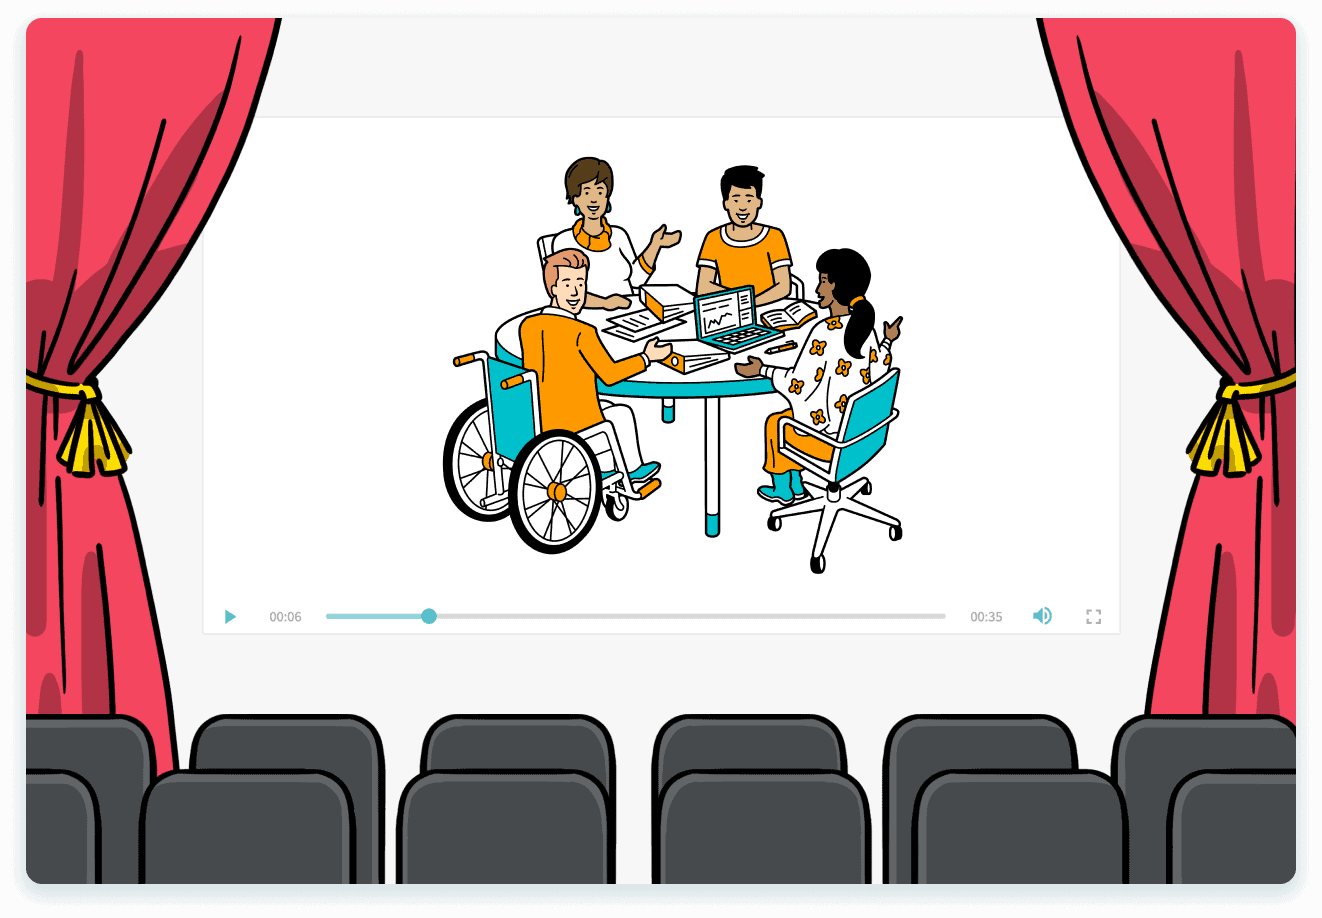 Ein Vorhang, zeigt eine Videoleinwand, auf der Personen zu sehen sind, als Hinweis auf den Storytelling-Ansatz von simpleshow